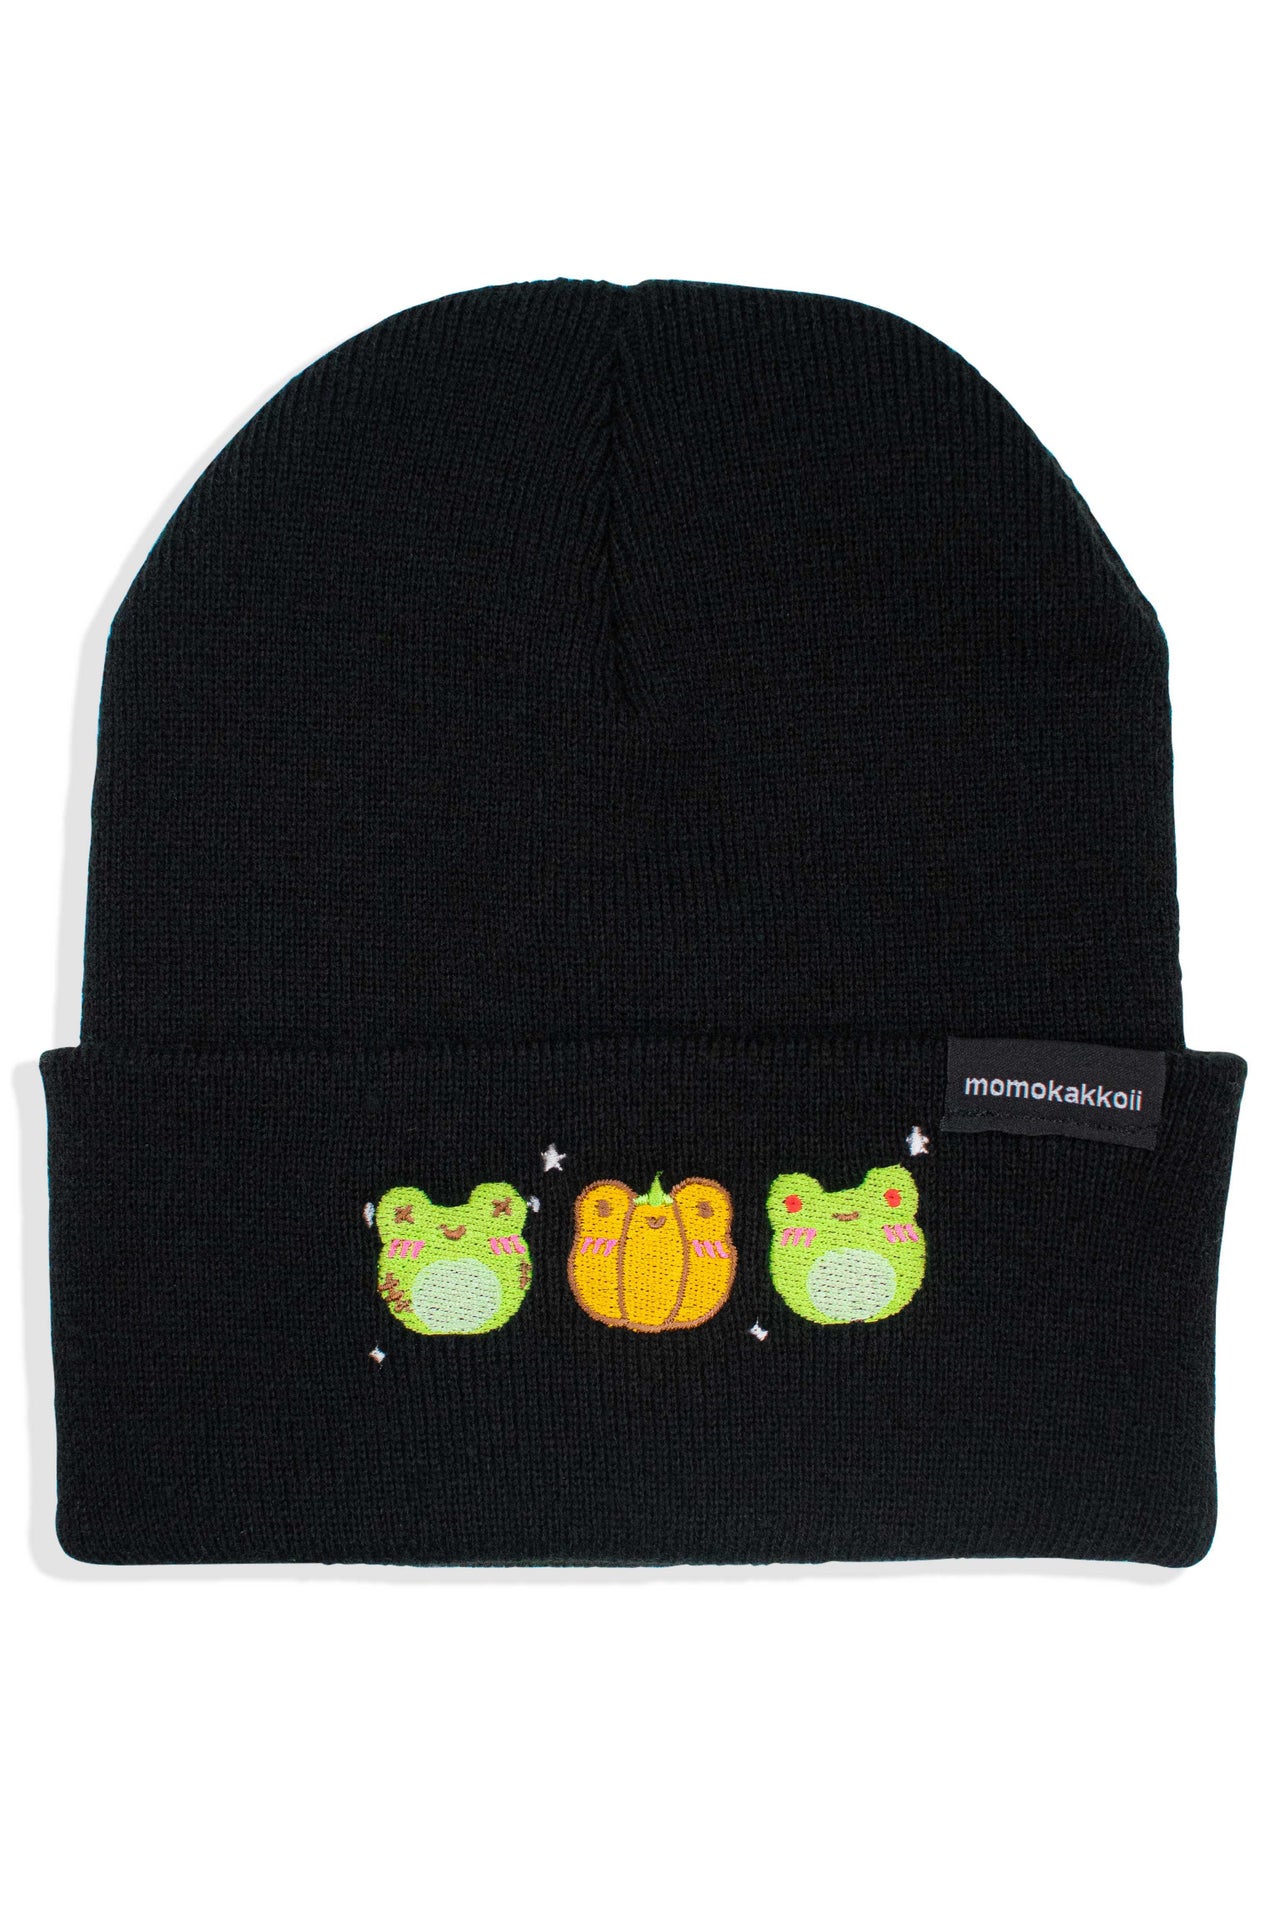 Spooky Froggies Embroidered Beanie - Momokakkoii